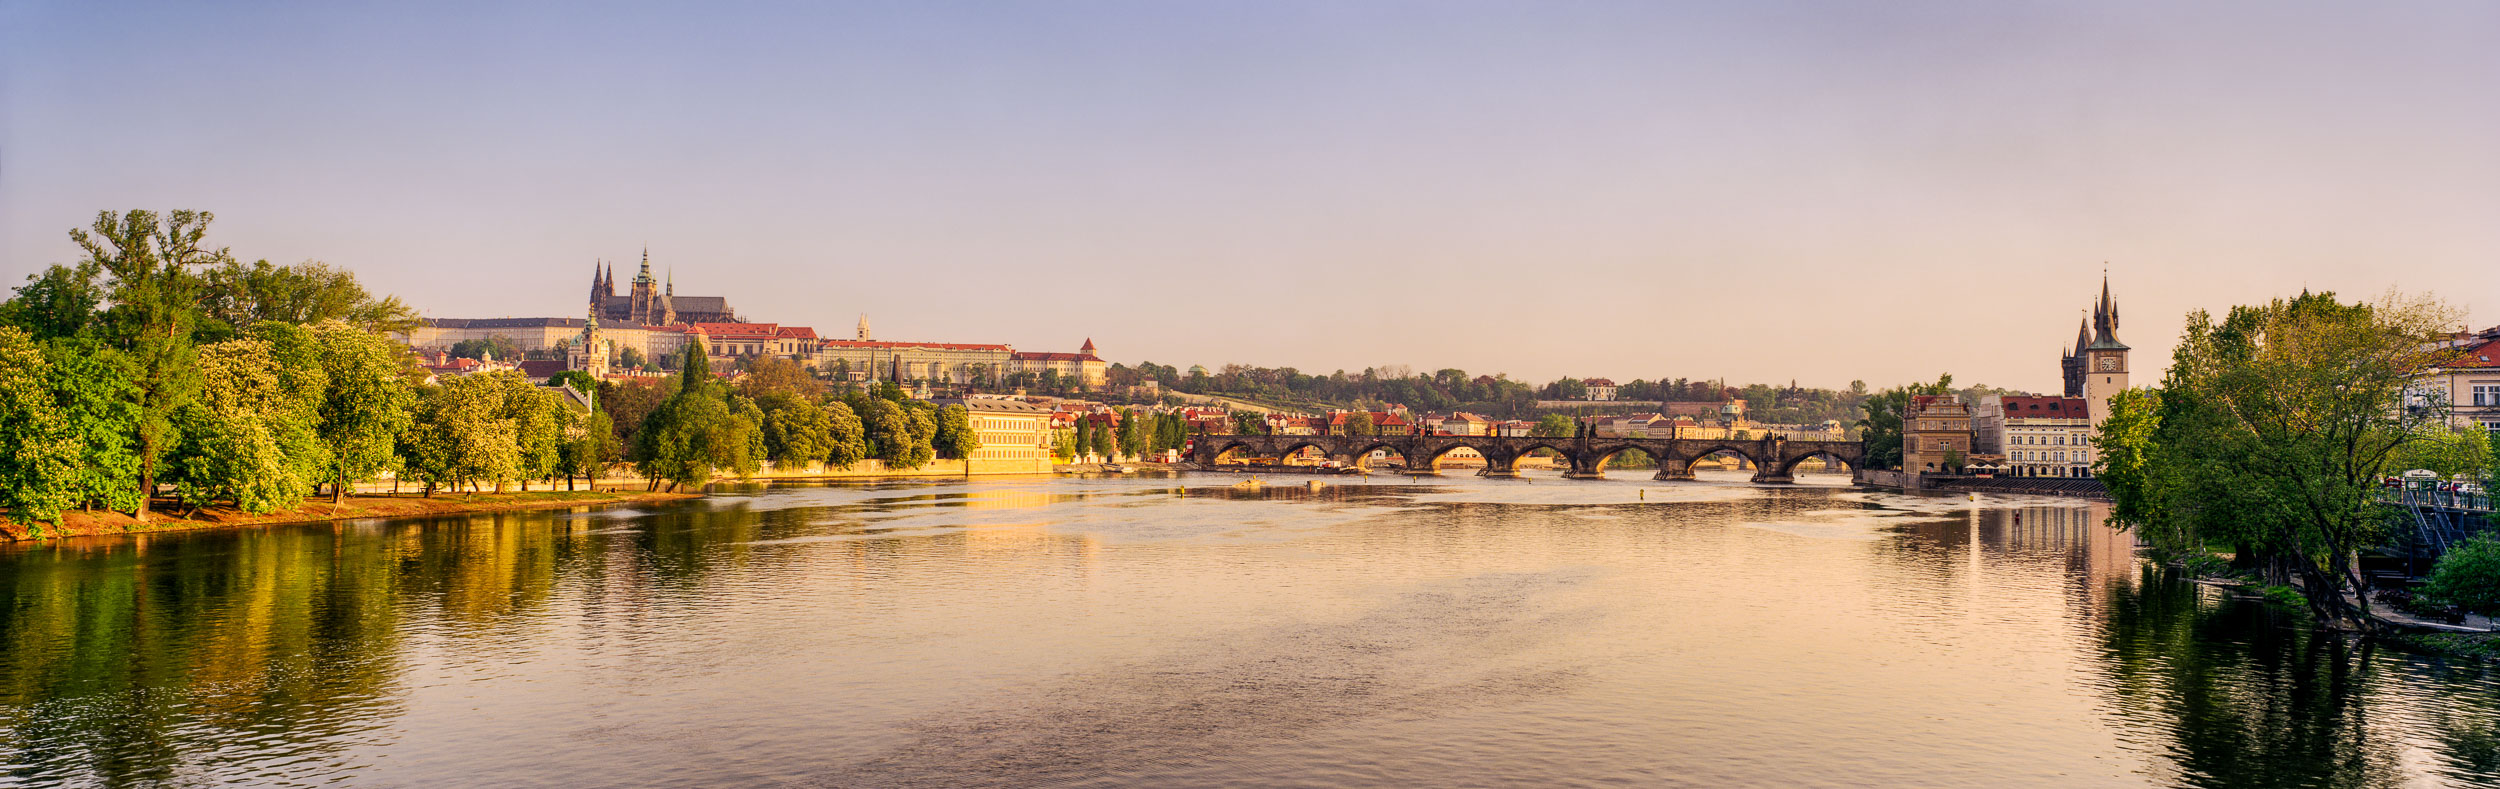  Vltava River, Charles Bridge, Prague